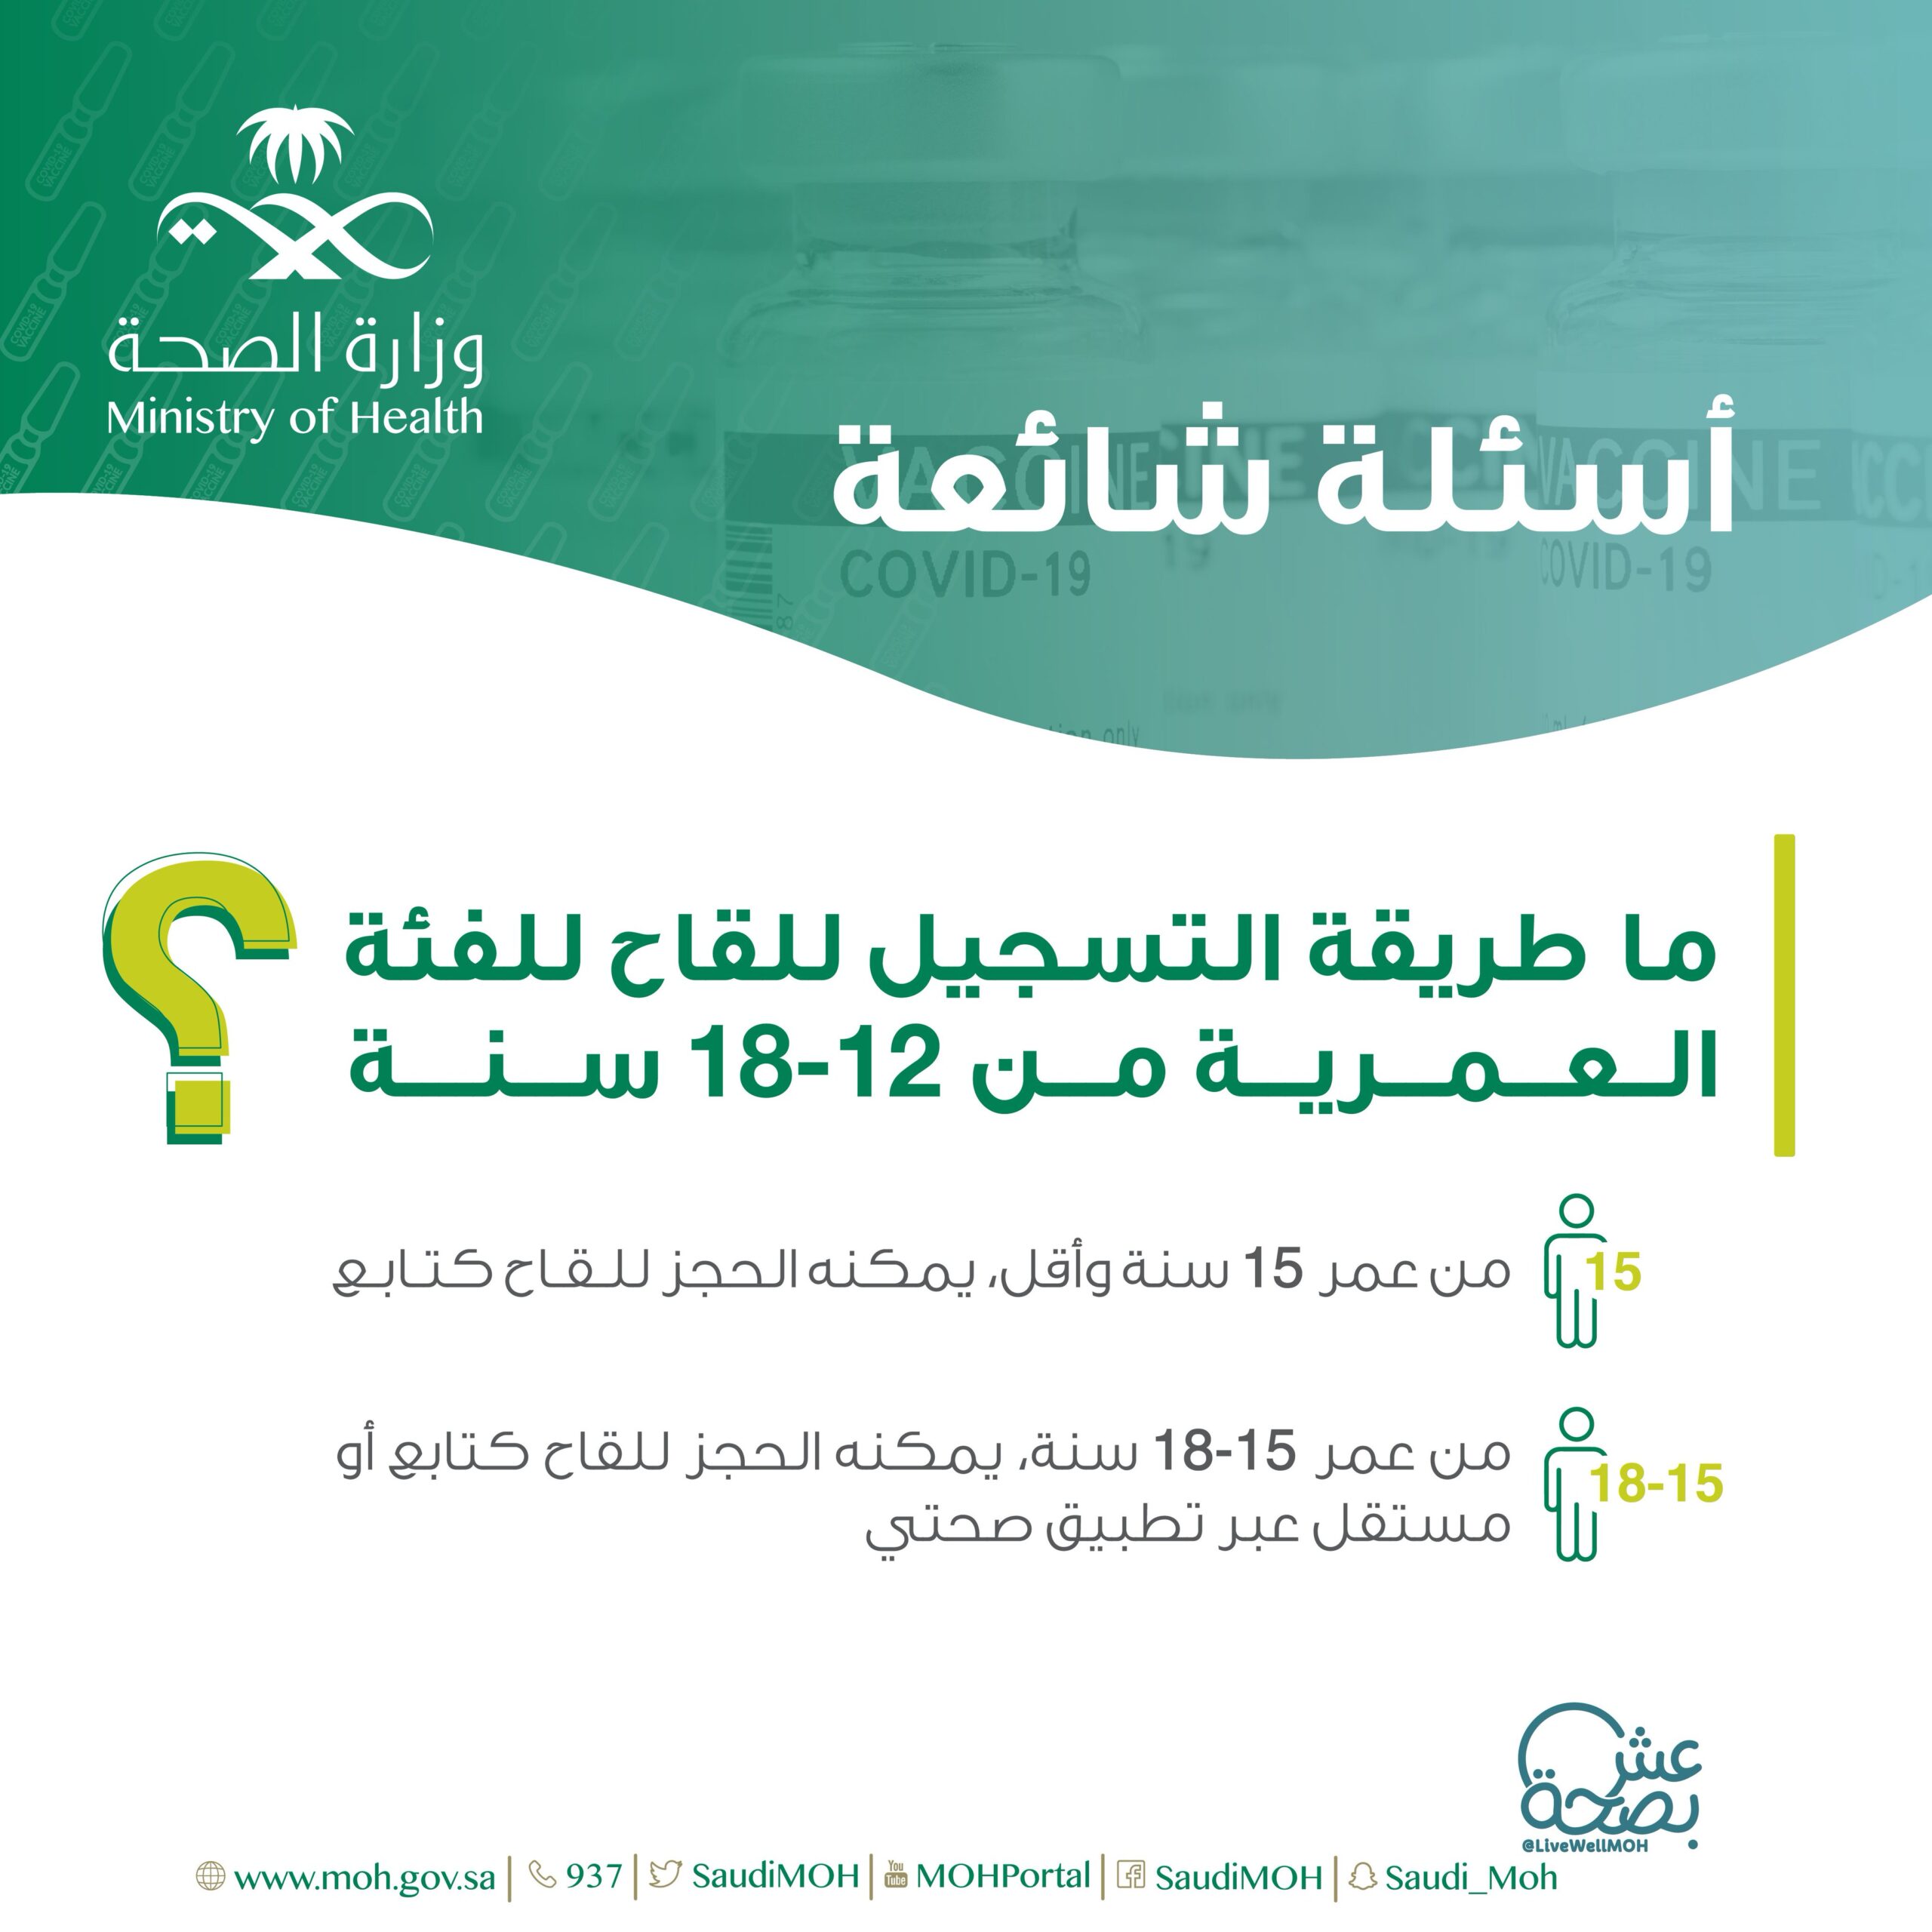 طريقة التسجيل لأخذ لقاح كورونا للفئة العمرية من 12-18 عامًا في السعودية